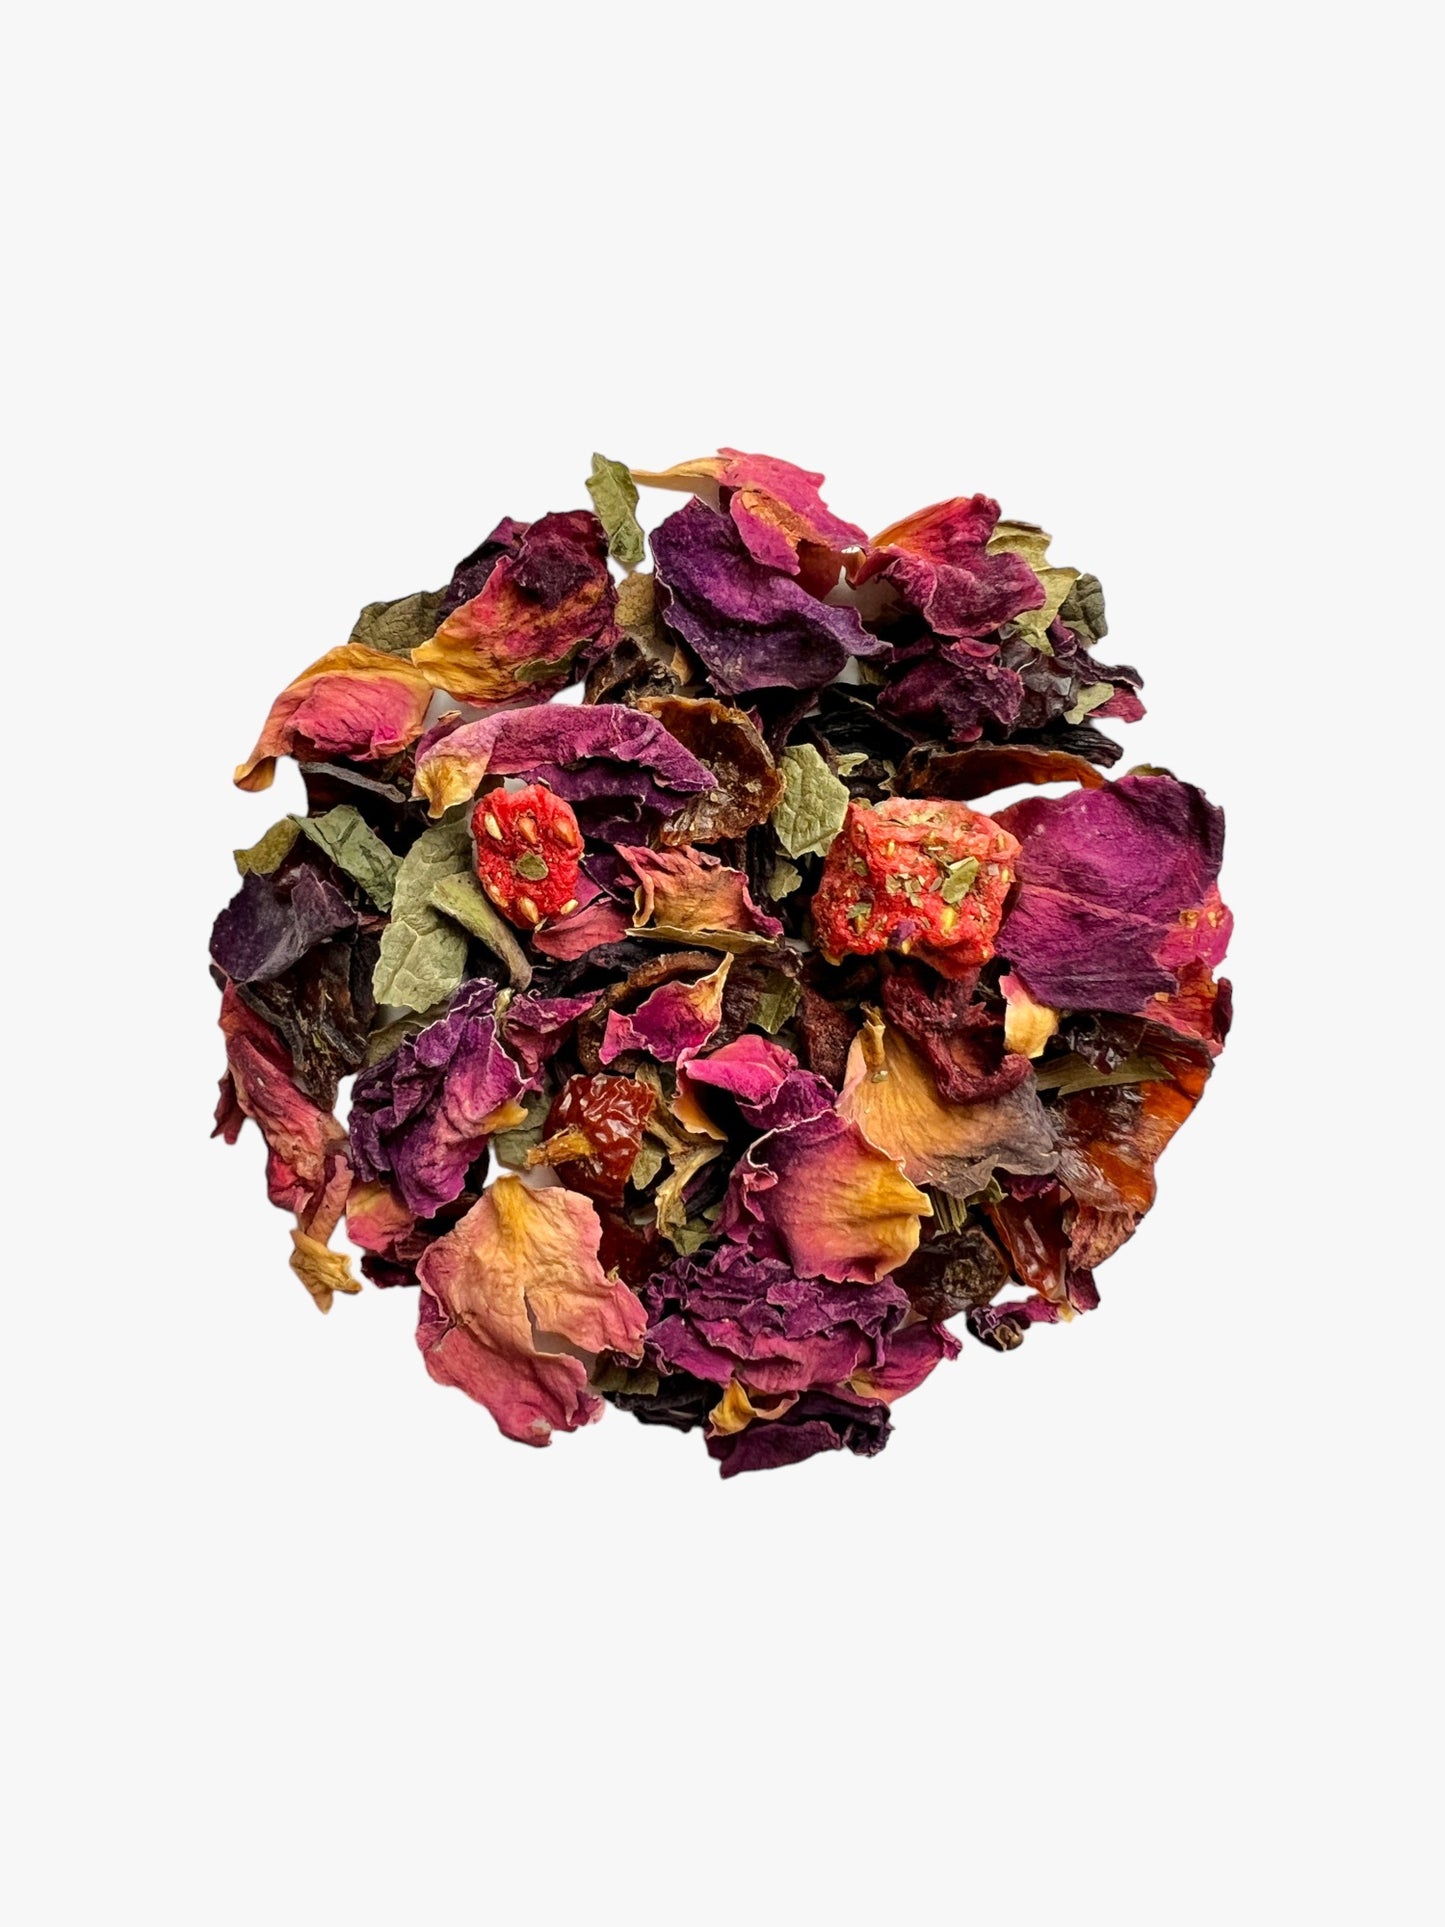 01 Blushing Rose - Herbal Tea Blend